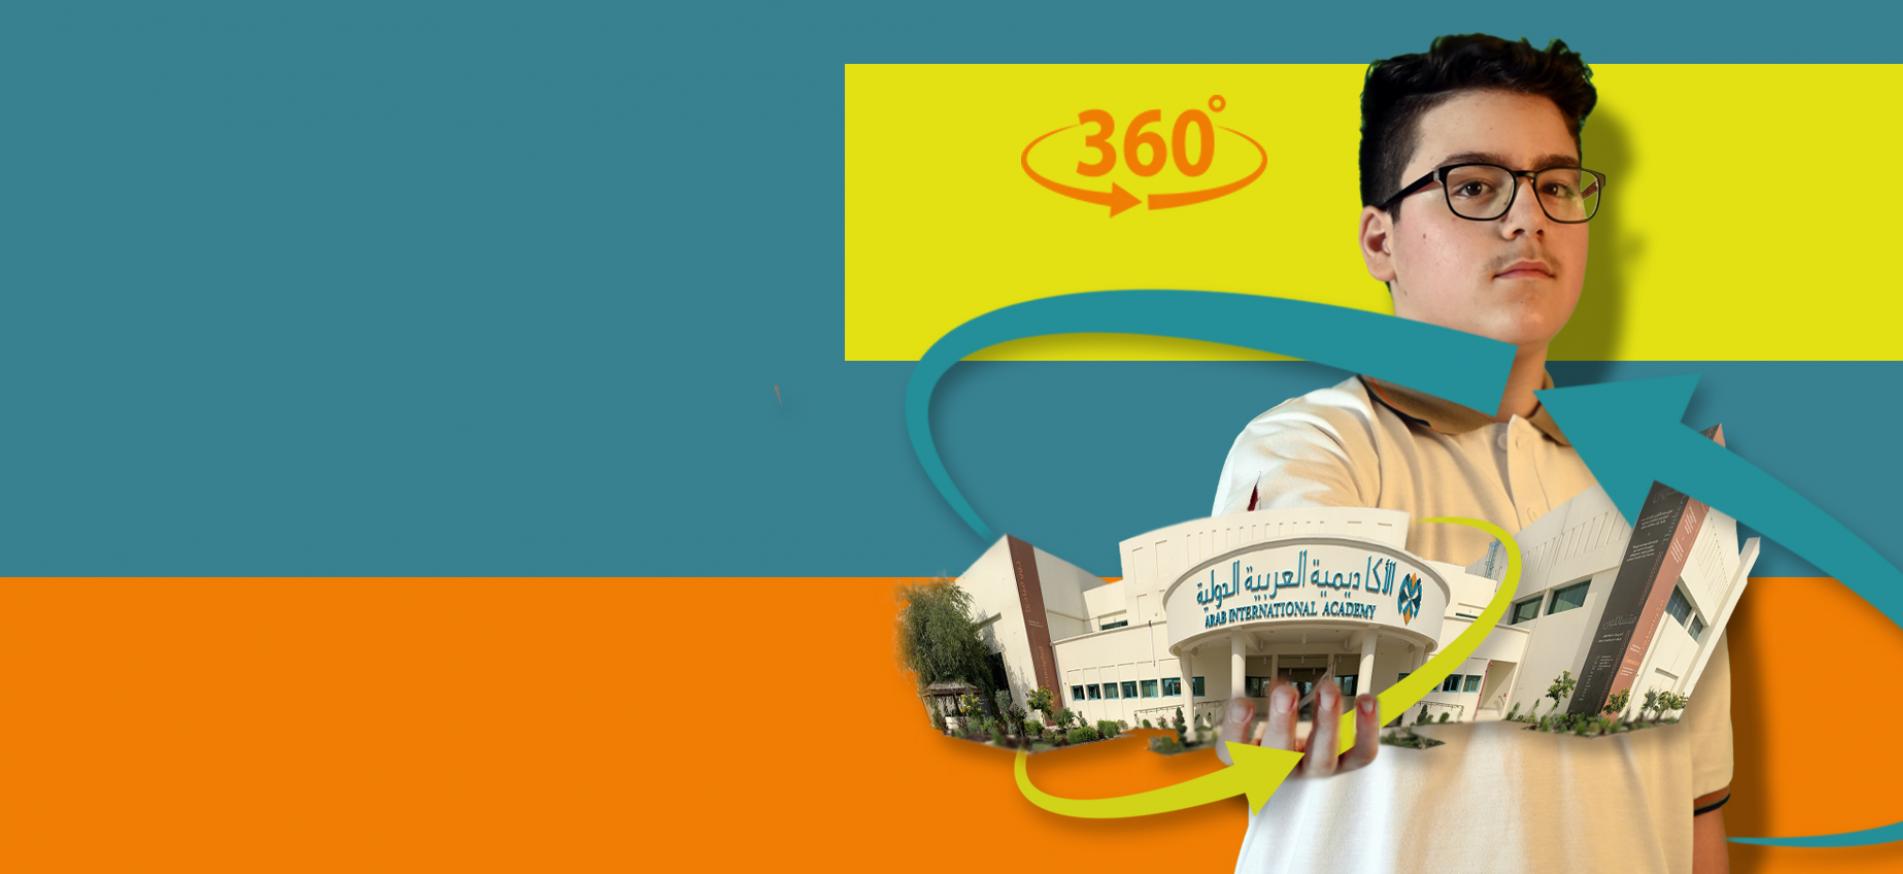 انضموا الينا في جولة افتراضية لاستكشاف مباني ومرافق الأكاديمية العربية الدولية باستخدام خاصية 360